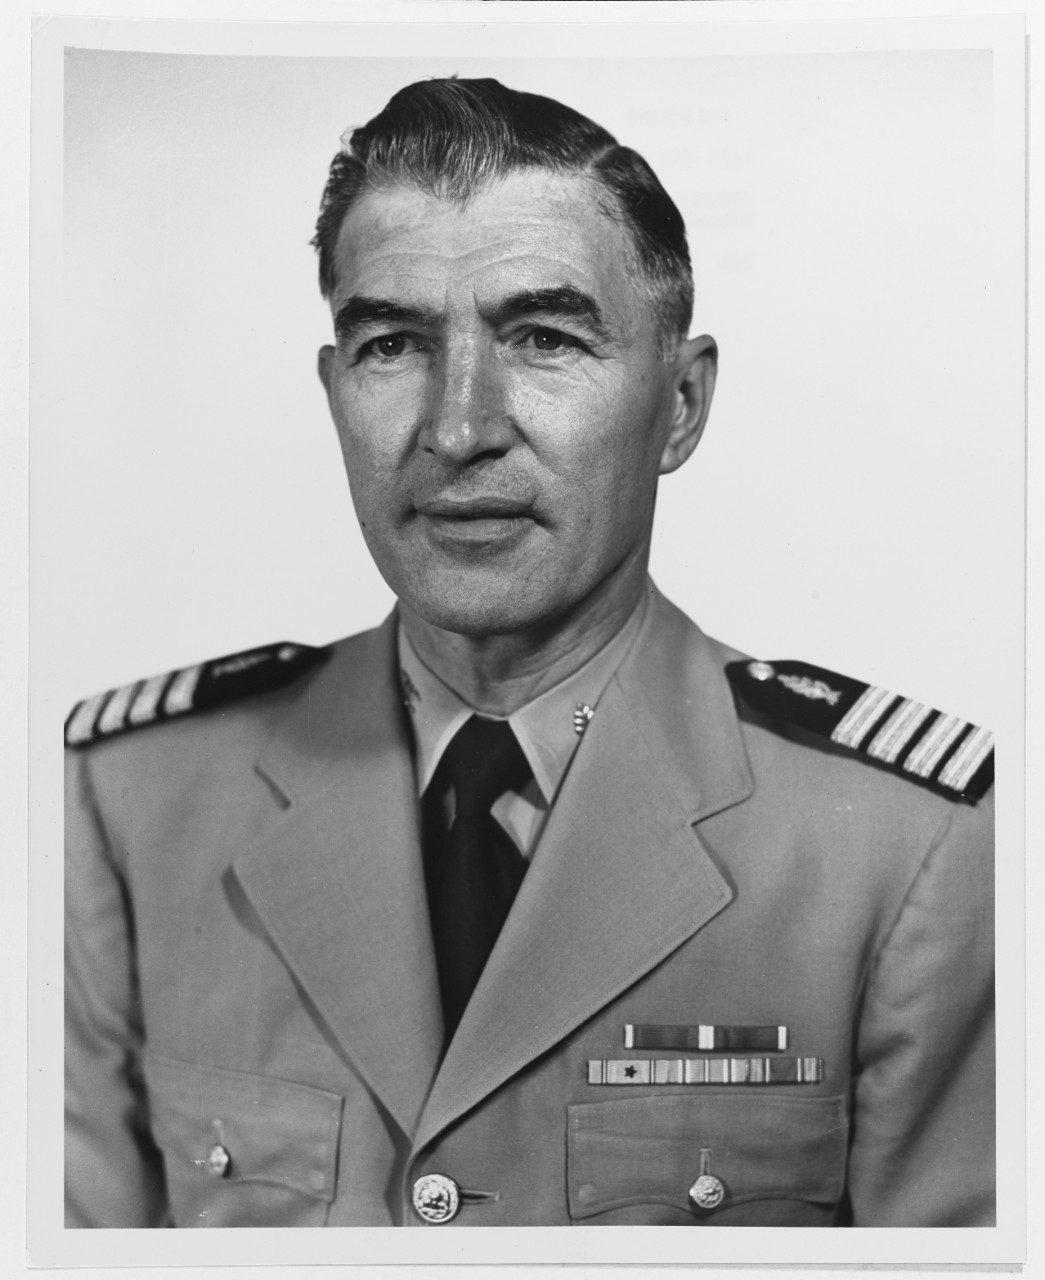 Captain Eric George Frederick Pollard, USN